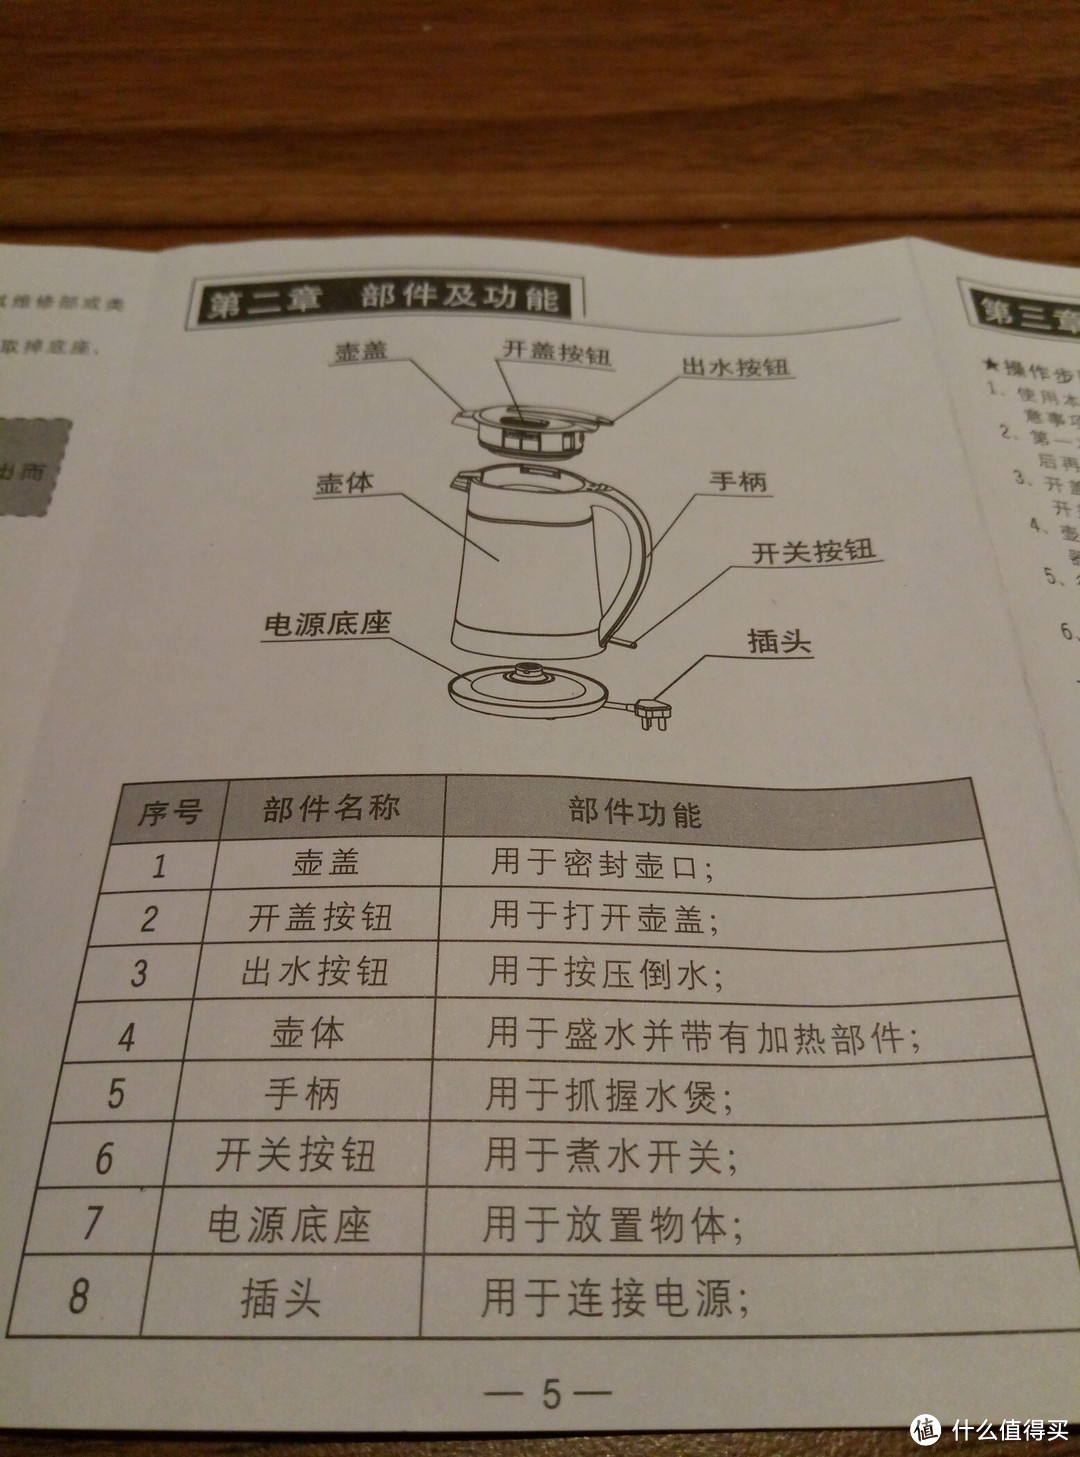 完美的温度，新一代电水壶 — Joyoung 九阳 JYK-15K01 开水煲 使用评测